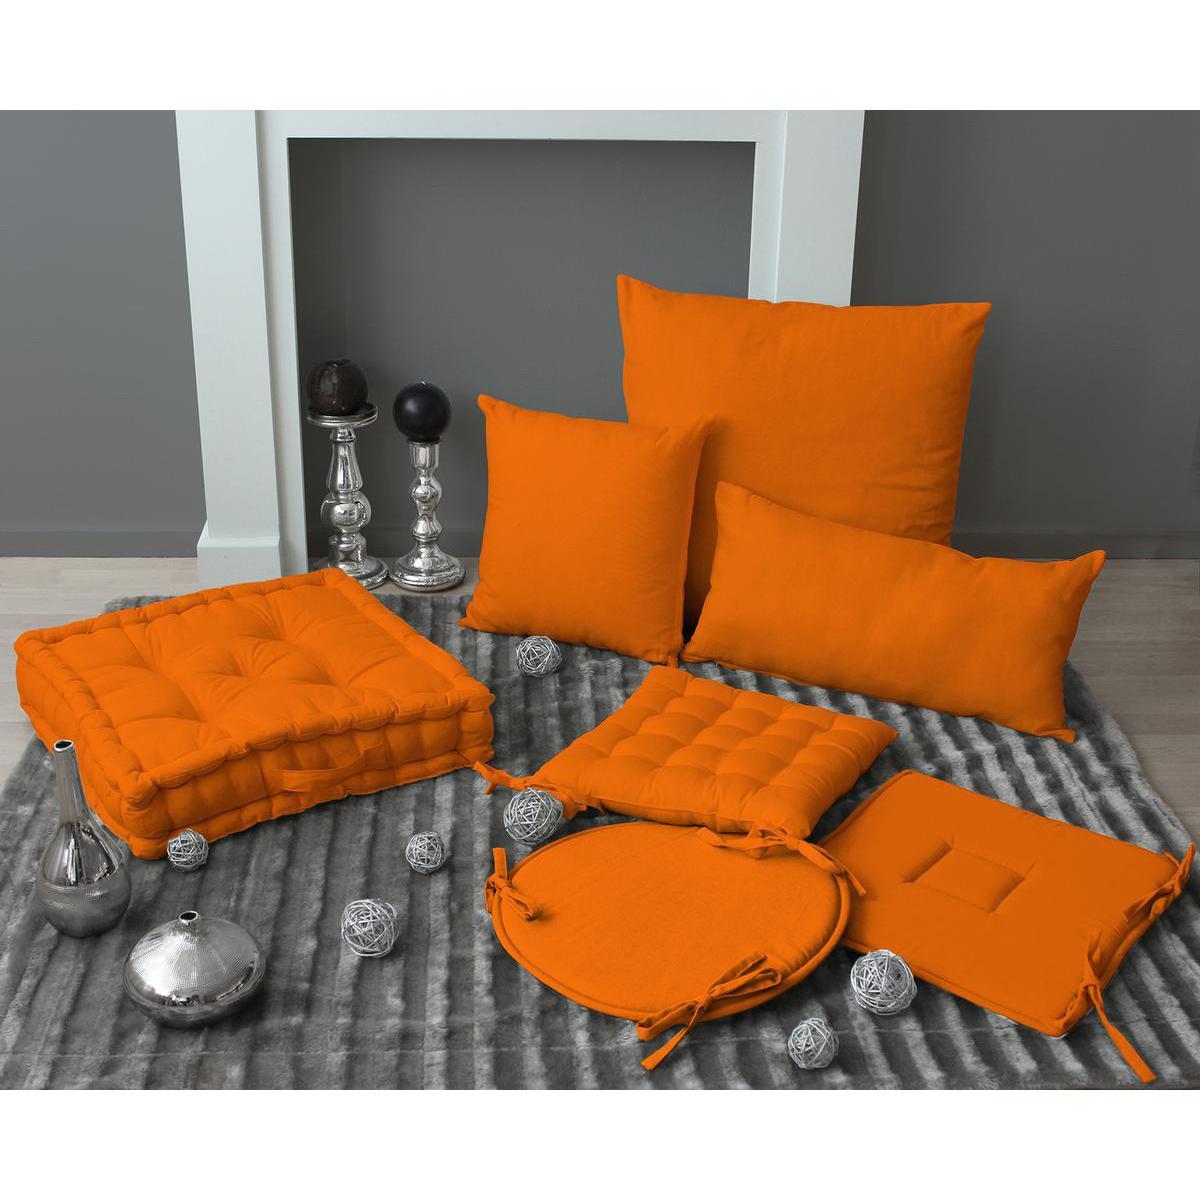 Galette de chaise - coton - 40 x 40 cm - Orange